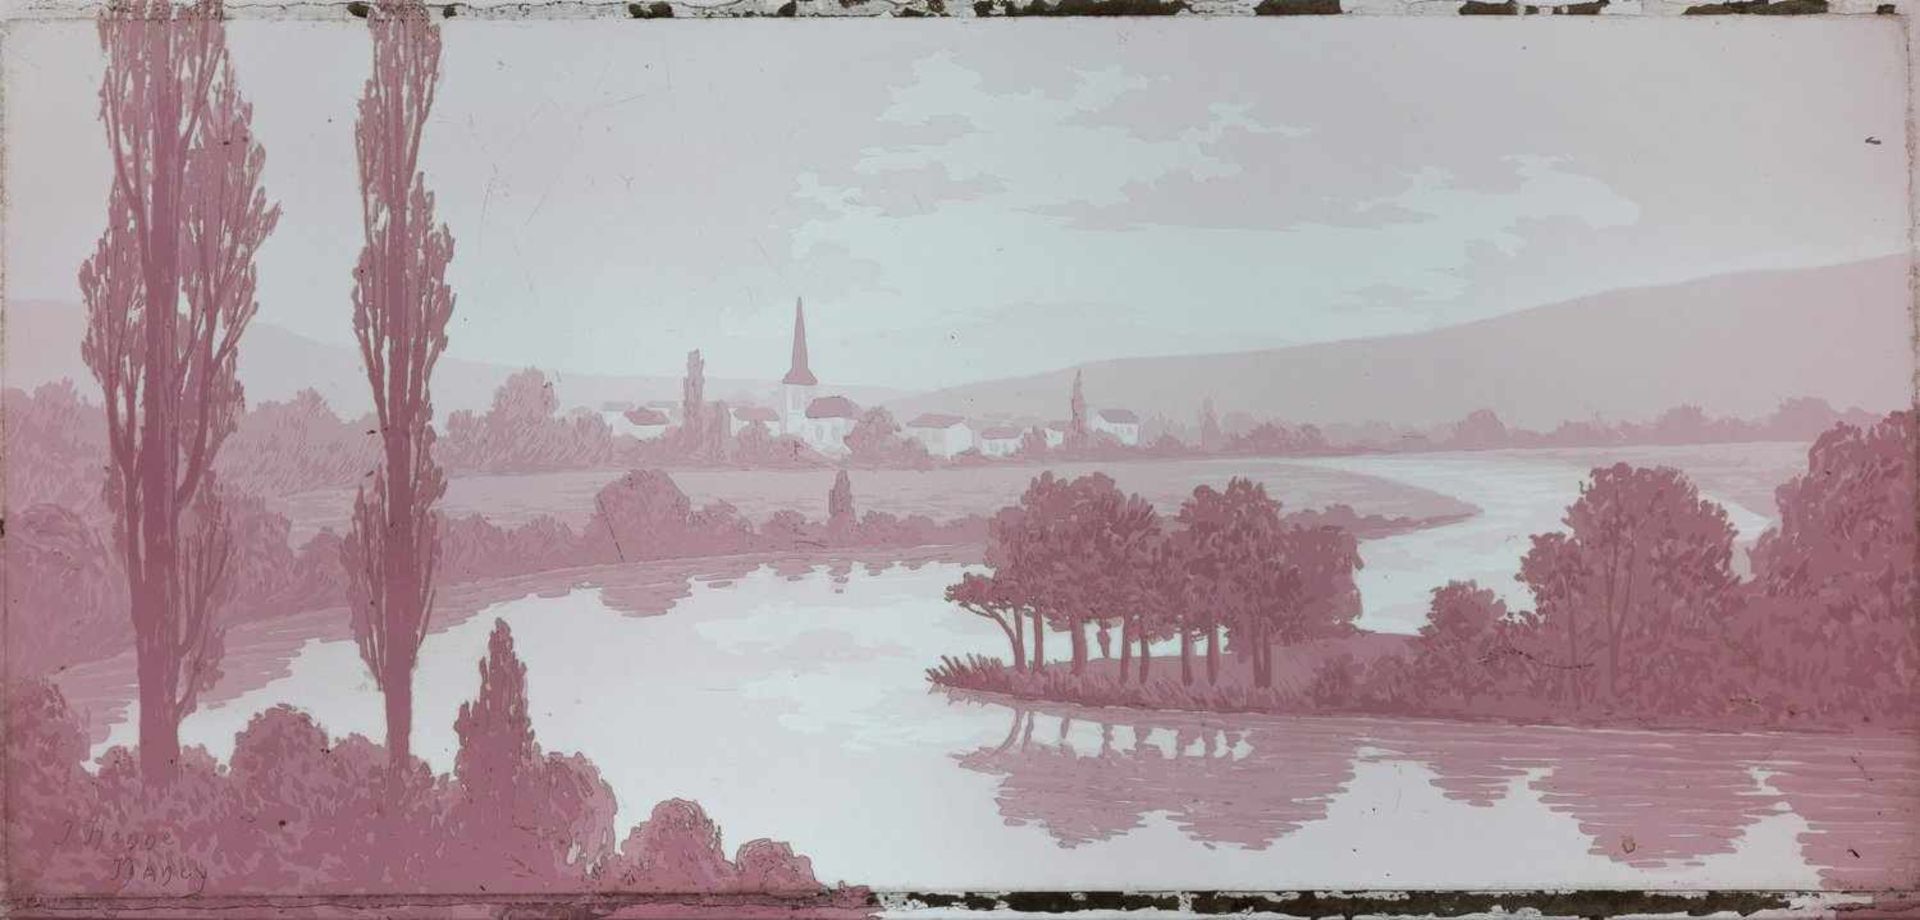 Glasbild mit FlusslandschaftNancy, um 1900Farbloses, violett überfangenes Glas. In mehreren